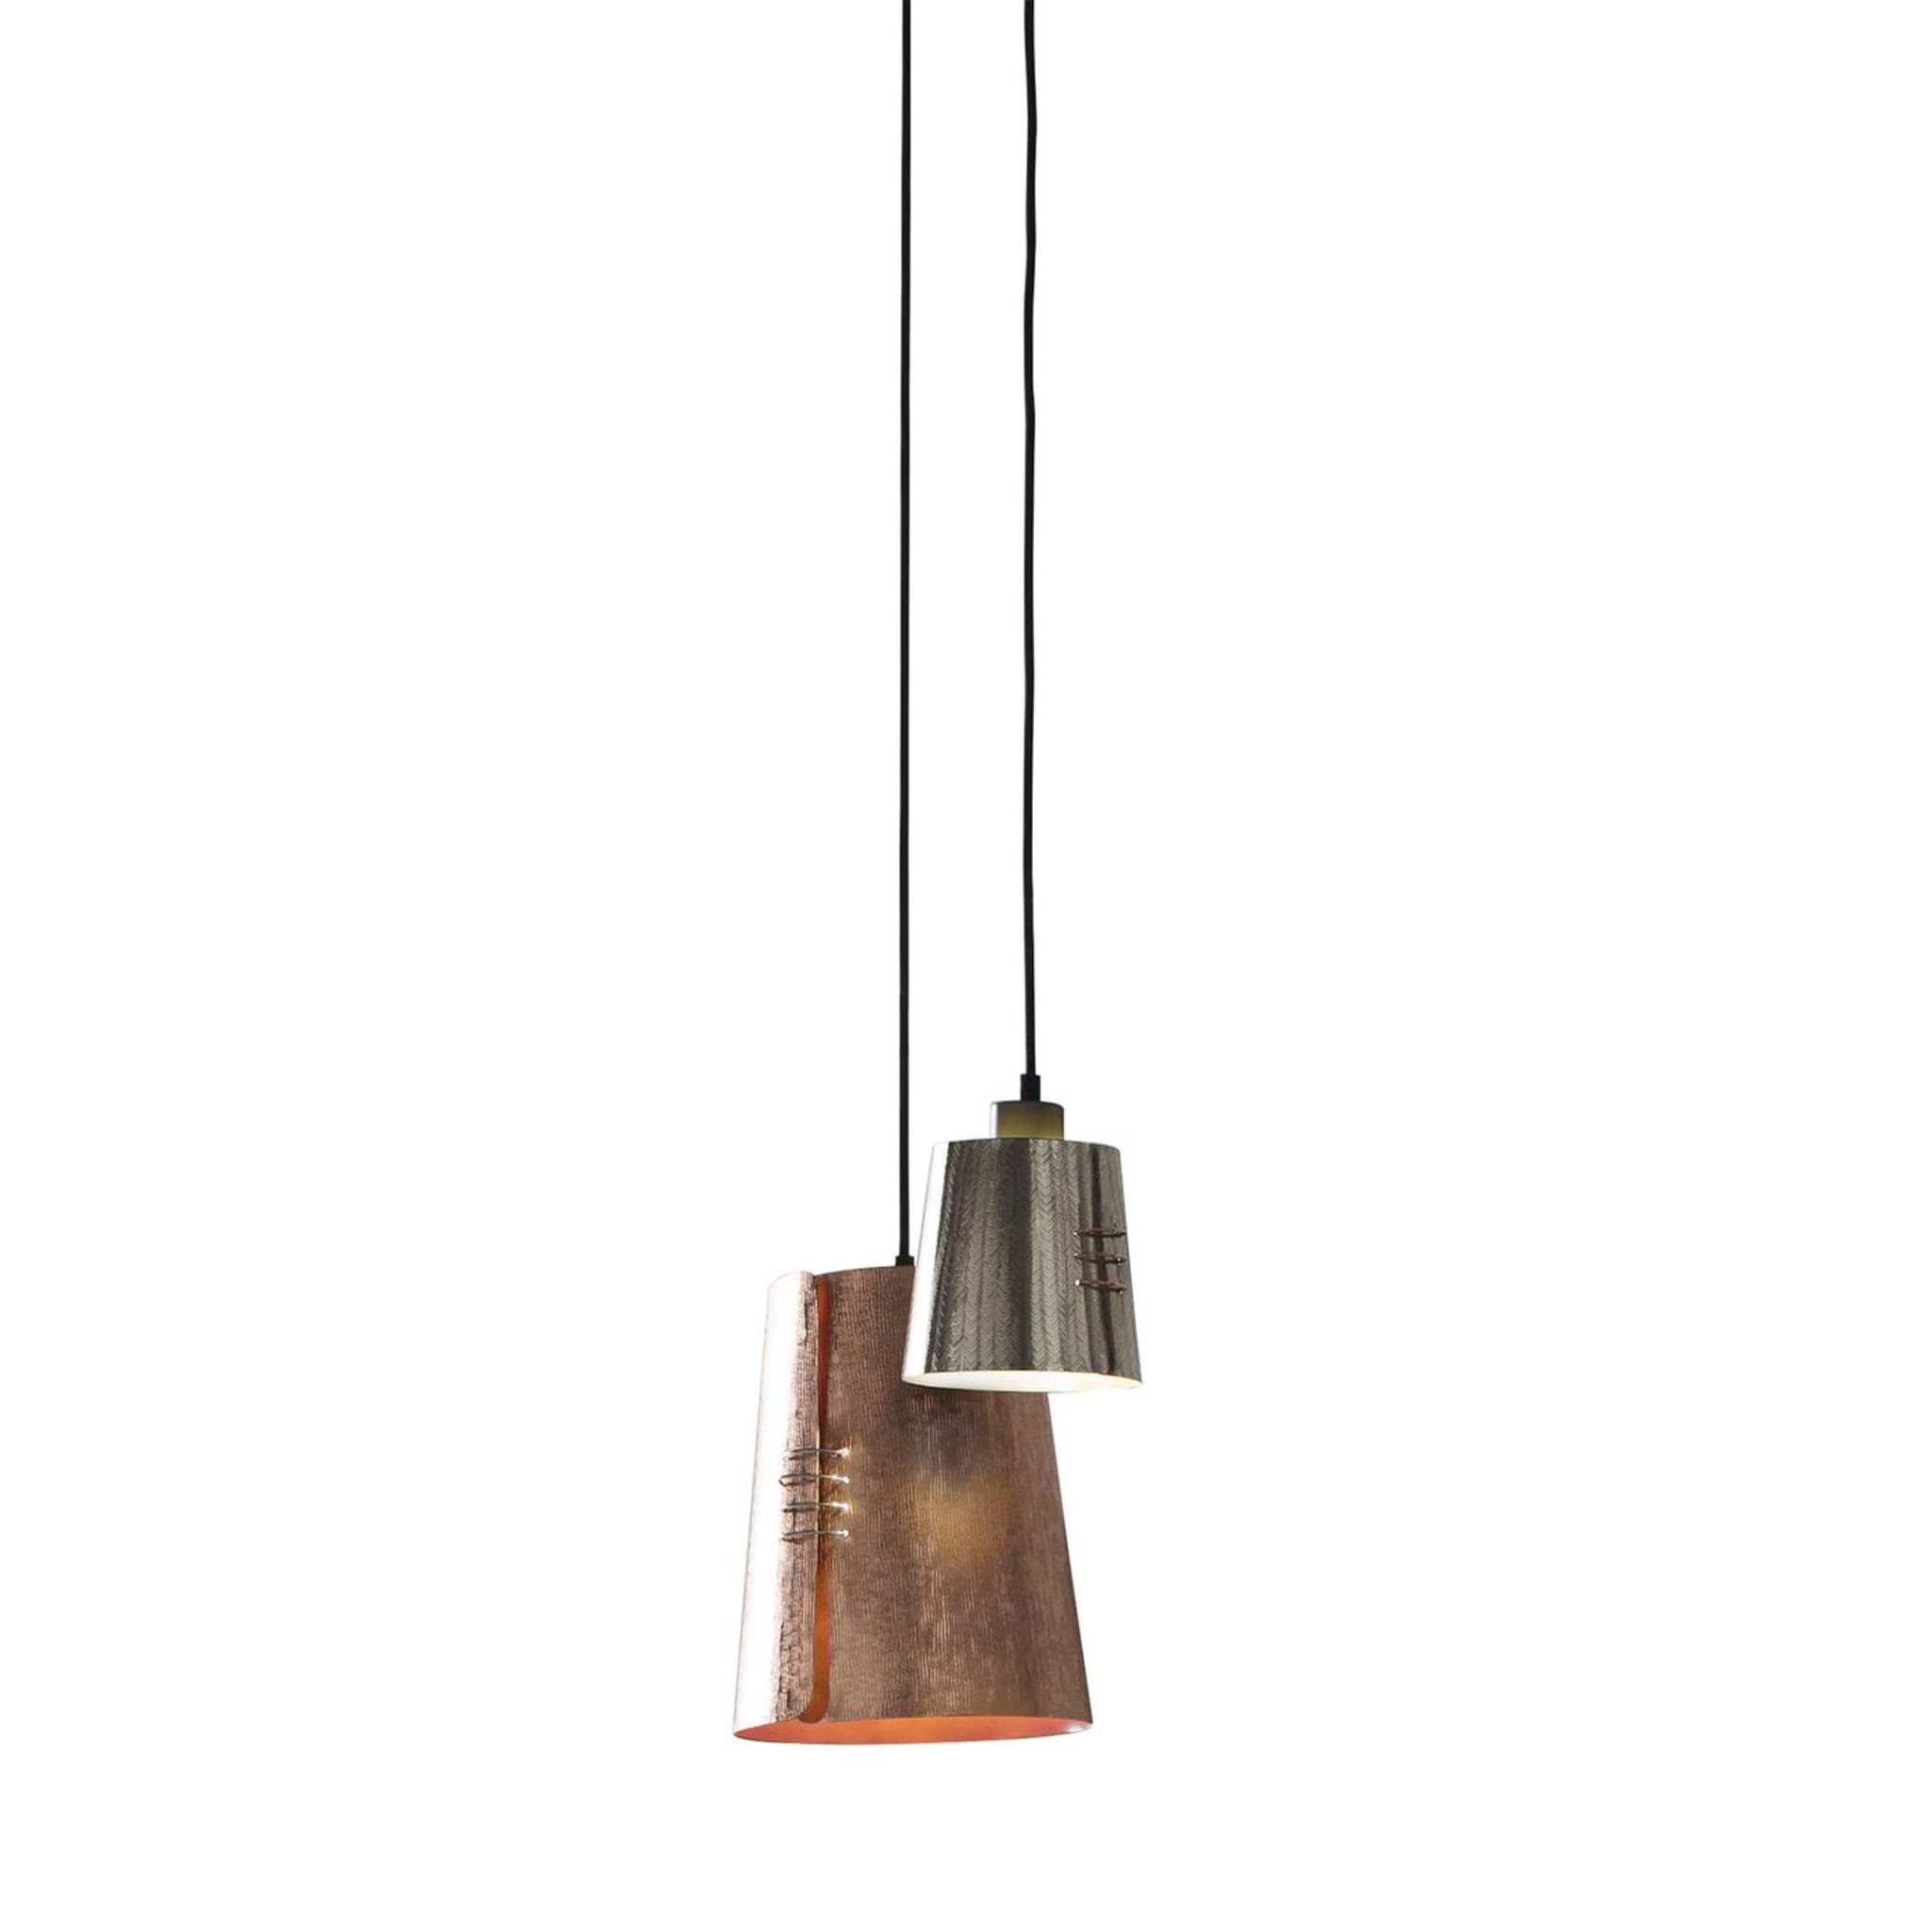 Cucito, ensemble de 2 lampes à suspension - Vue principale